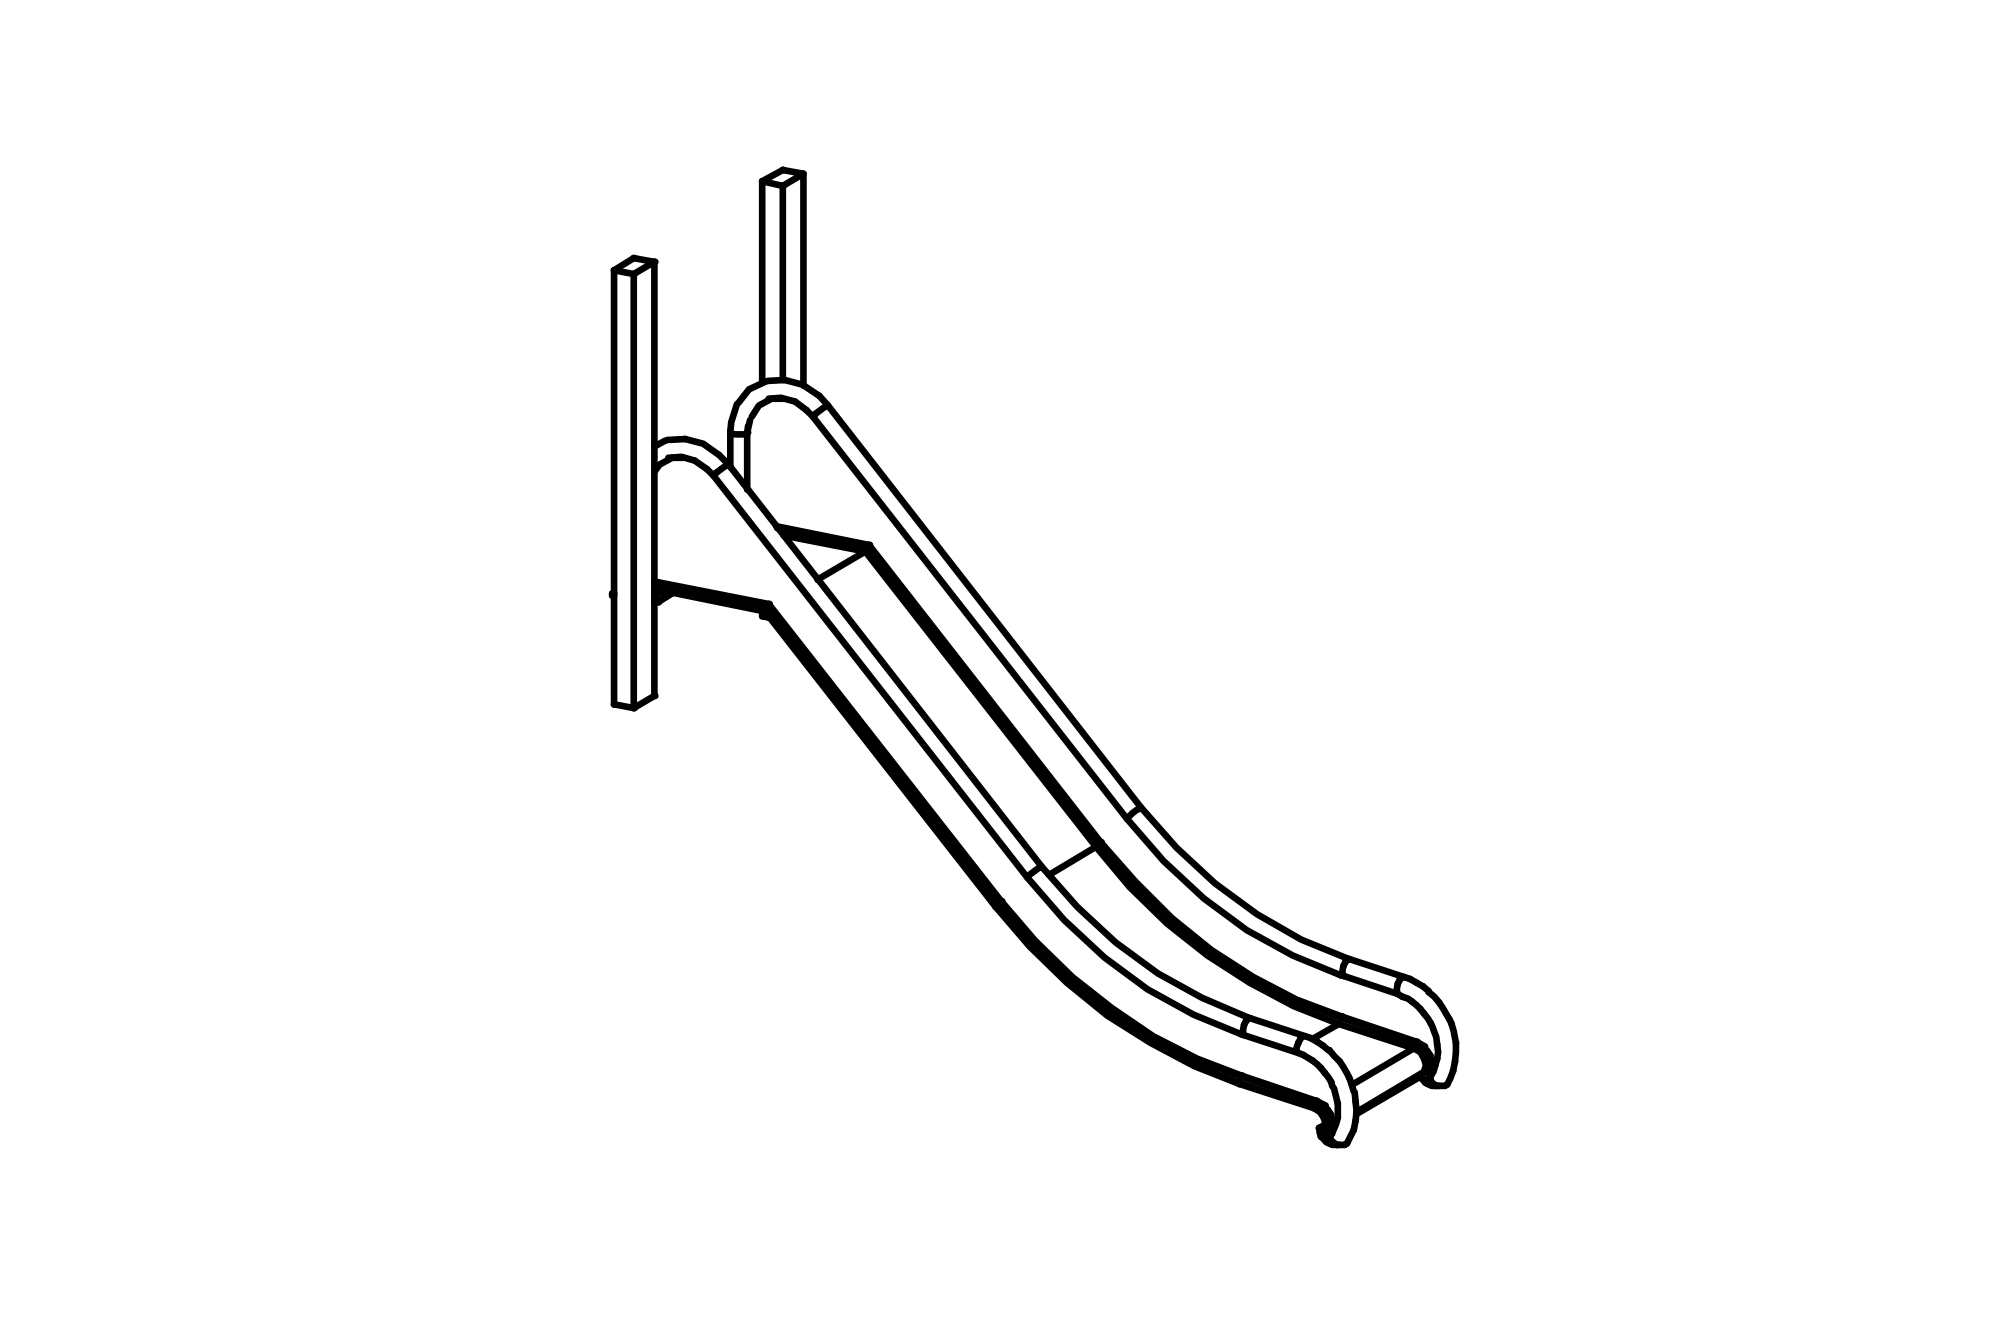 Stainless steel slide, width = 0.45 m